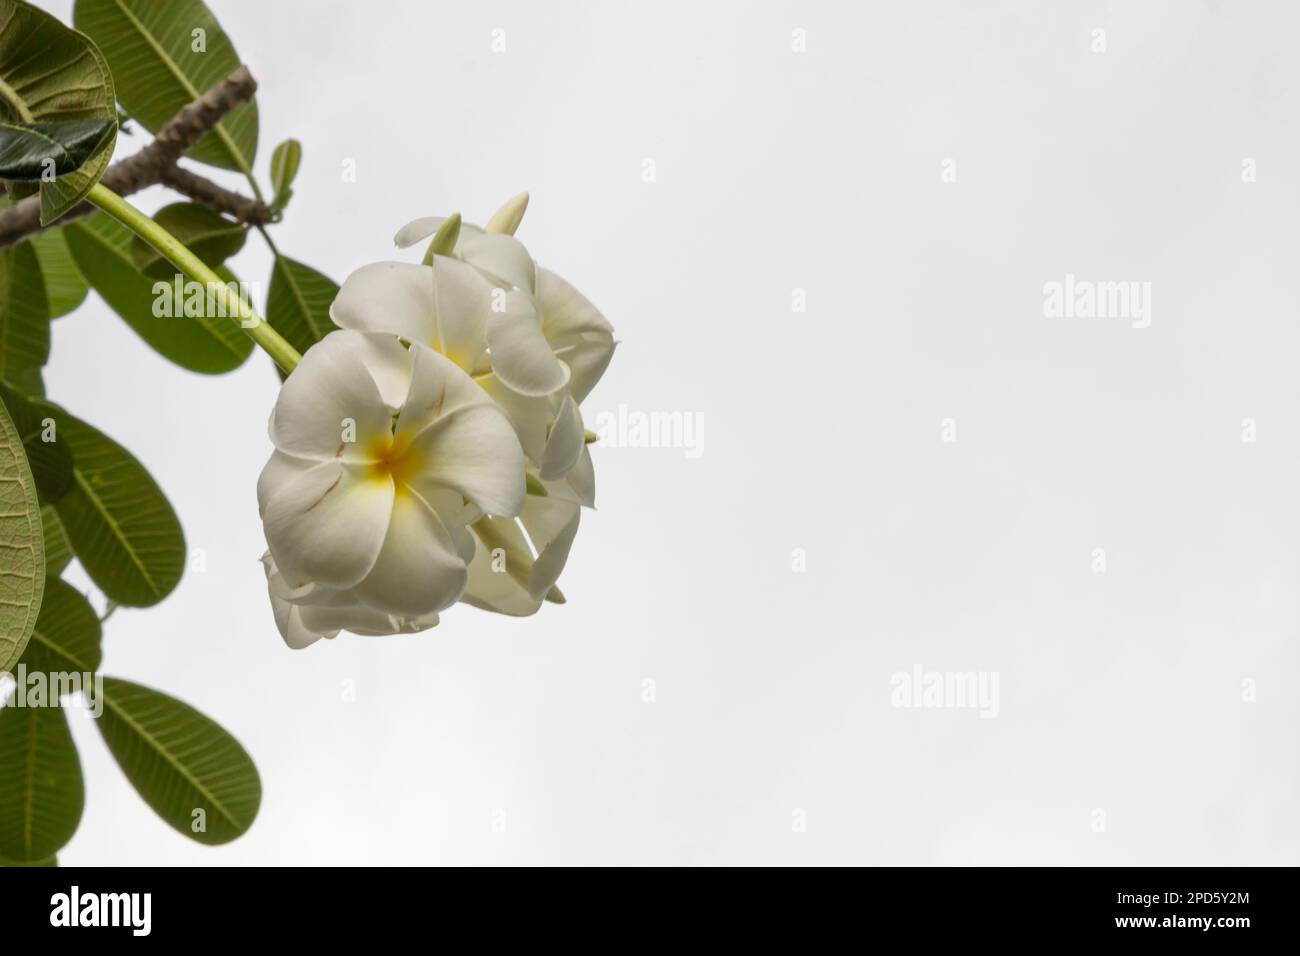 Blume oder Plumeria Blume Bouquet auf Zweigbaum, Plumeria ist weiß und gelbe Blütenblätter und Blüte ist Schönheit Stockfoto